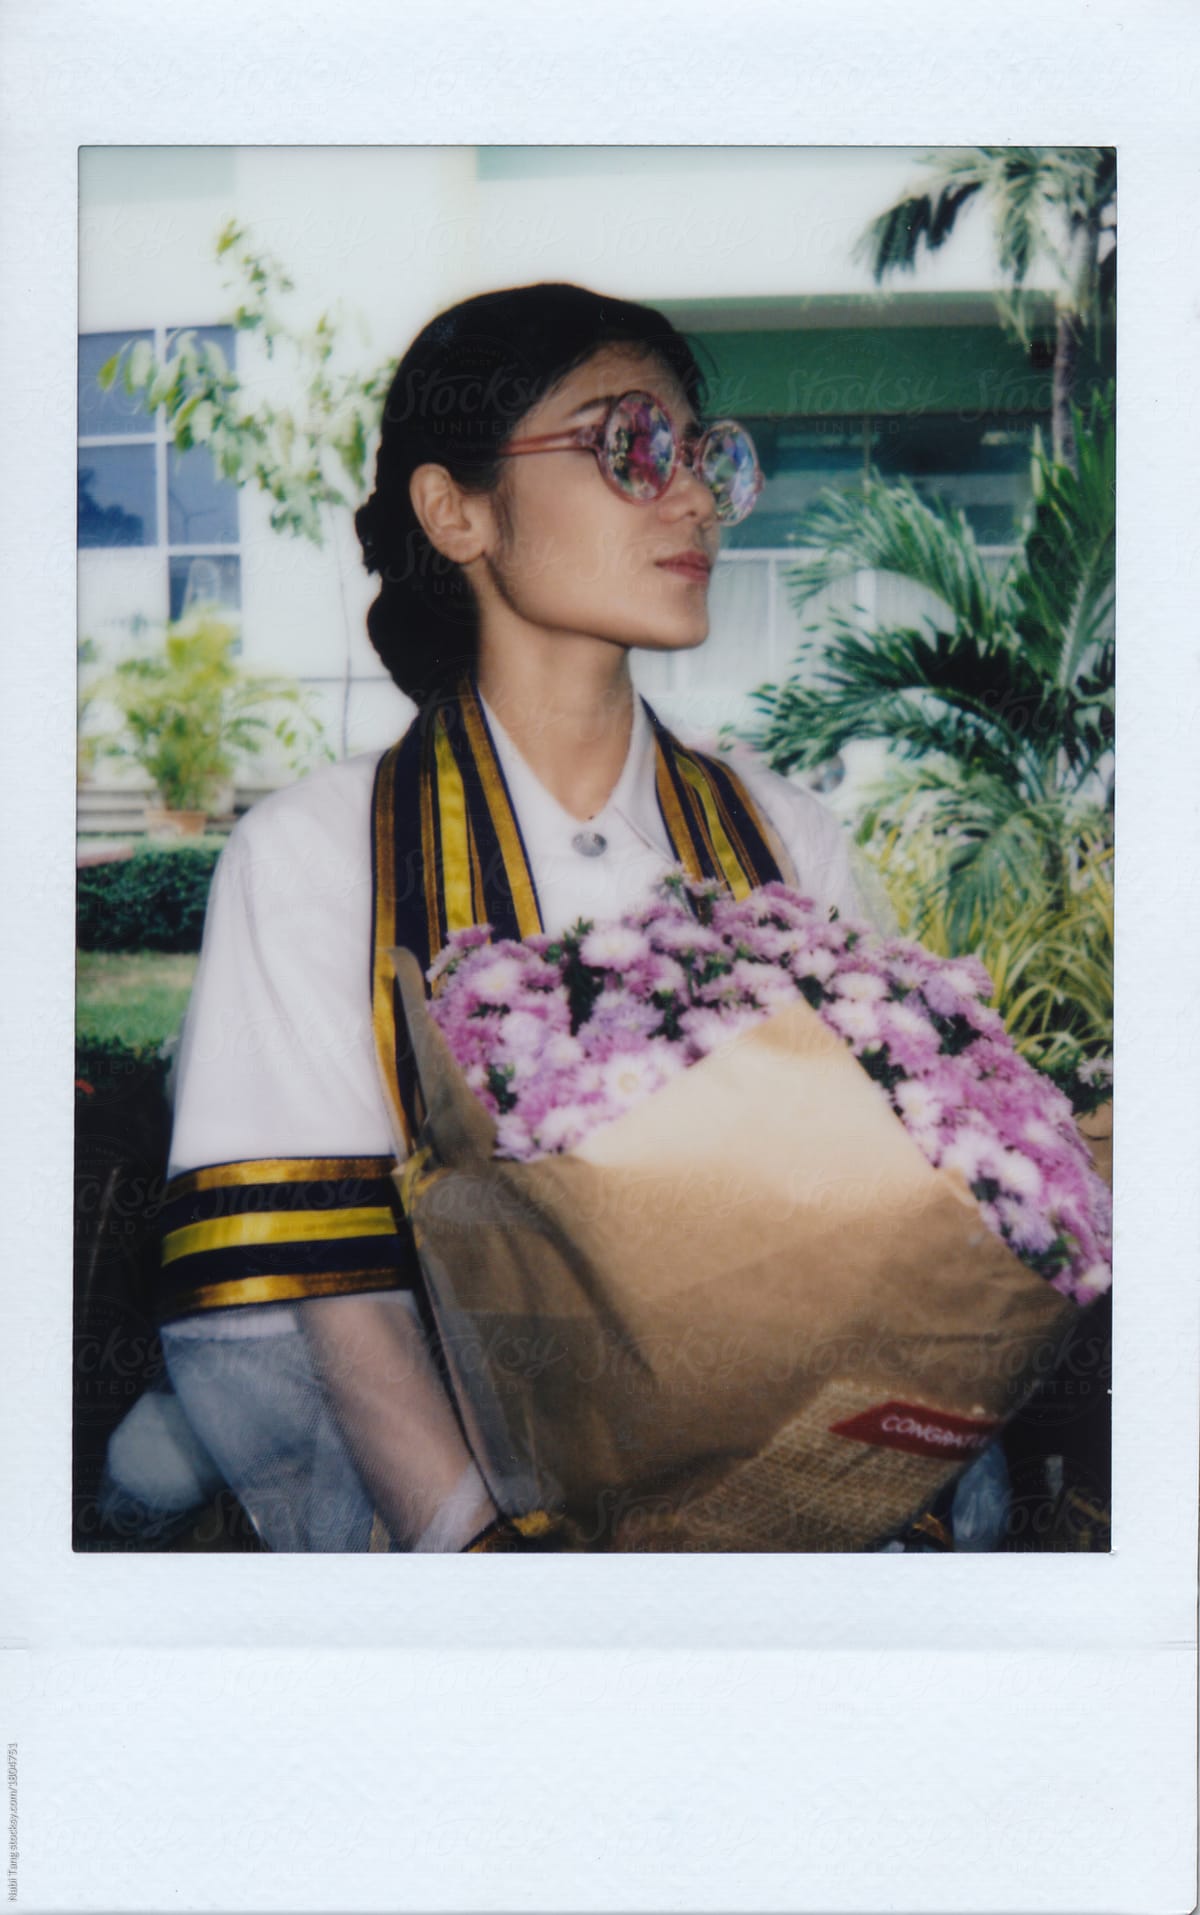 Instant mini polaroid image of Thai woman graduation day